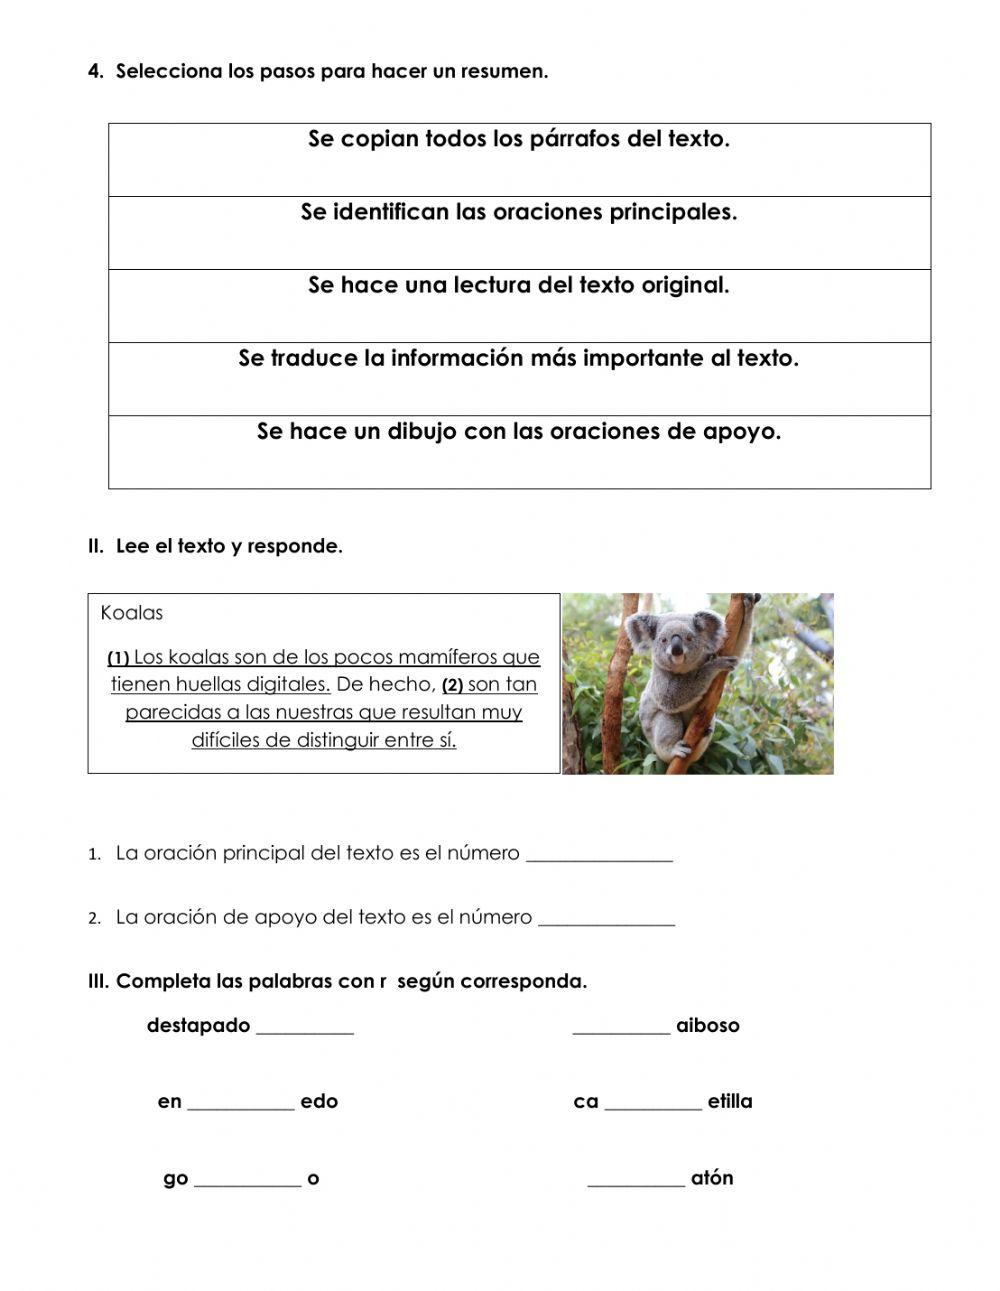 Examen de español 3°